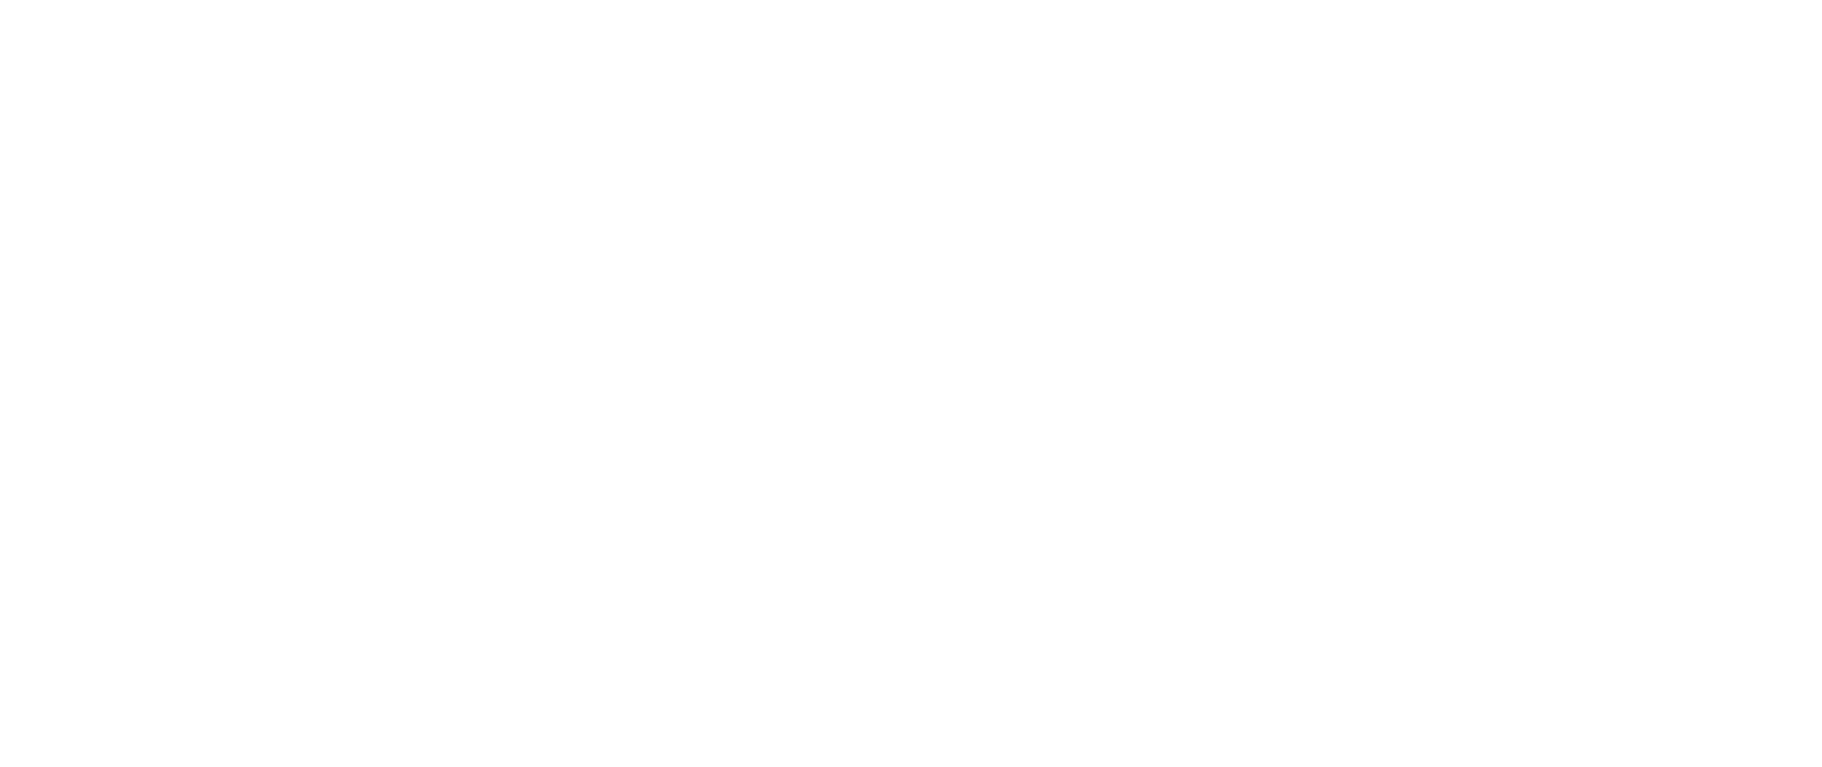 MindTree Logo - My Access